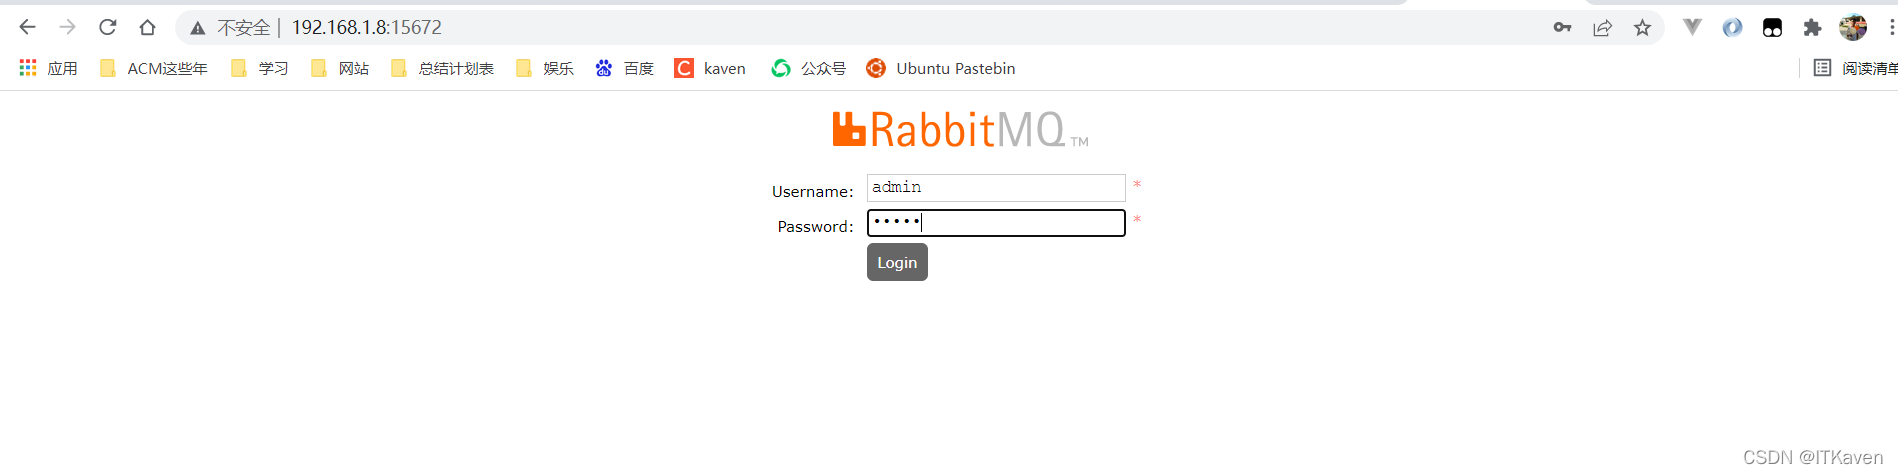 CentOS：下载RabbitMQ并远程访问_erlang_10